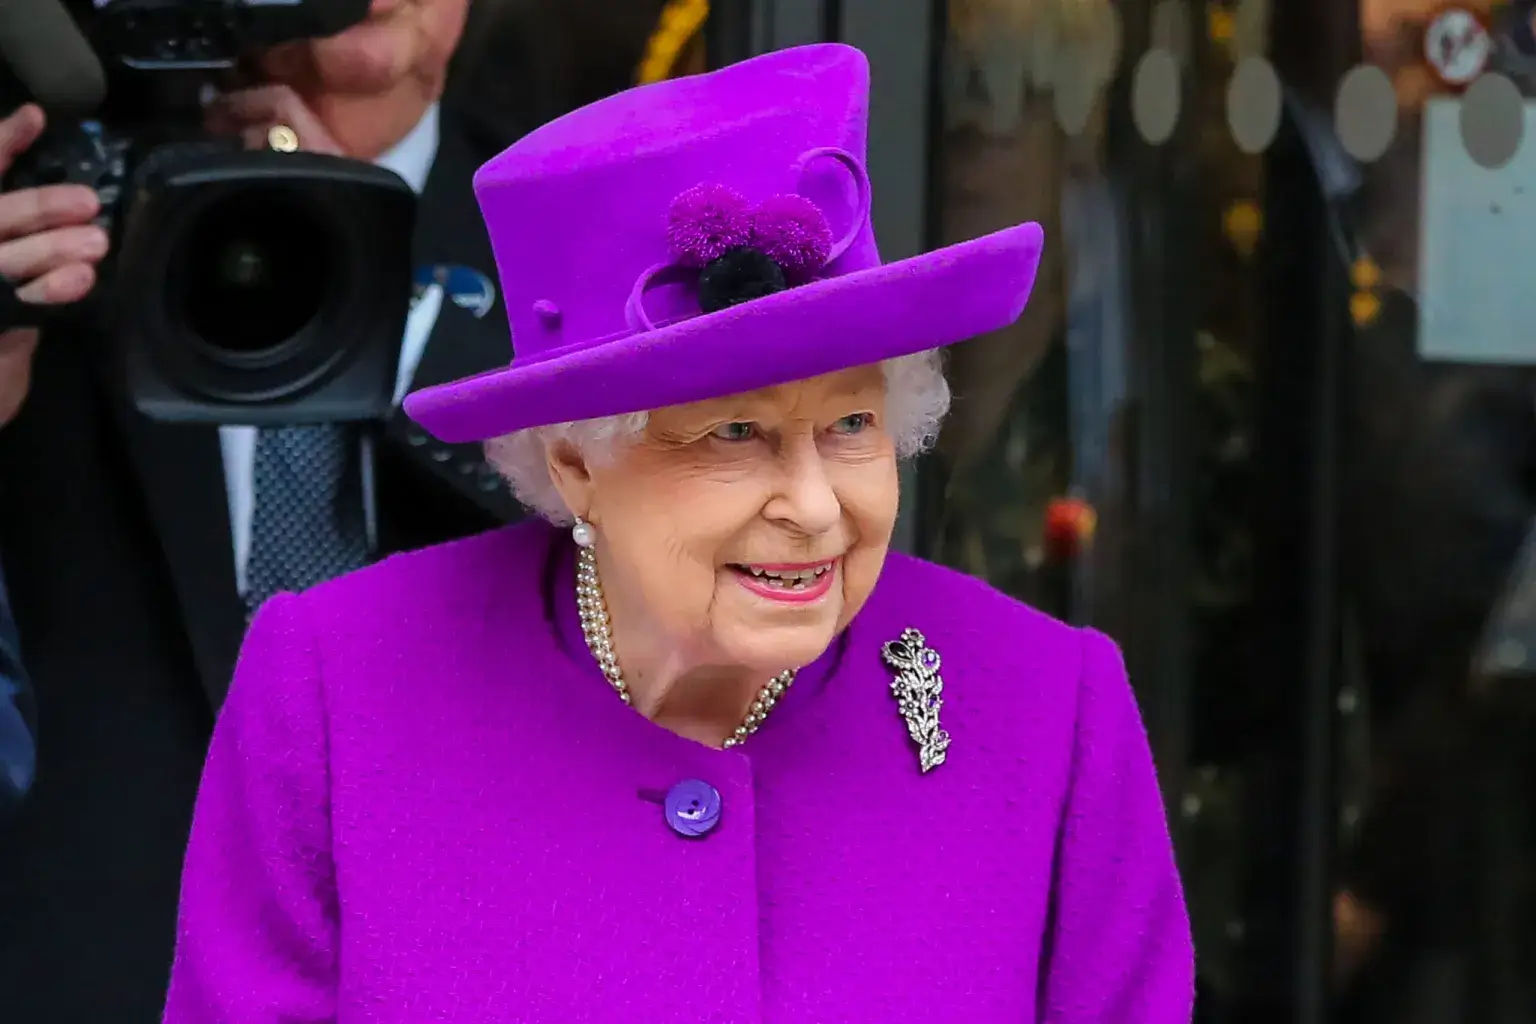 العائلة المالكة في بريطانيا تحصل على 27.3 مليون باوند بدل غلاء معيشة